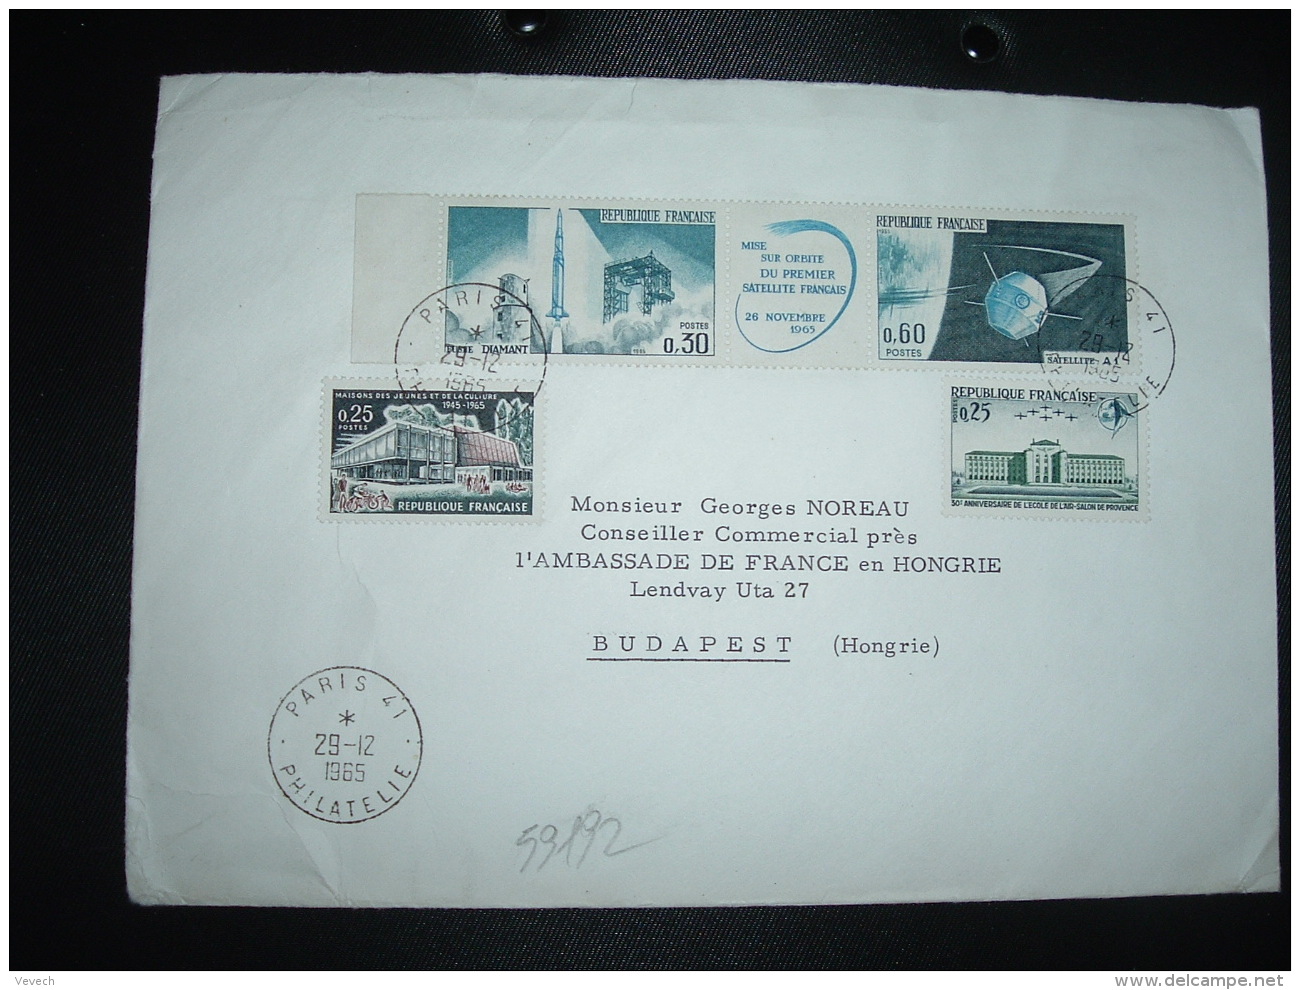 L. TP SATELLITE A1 0,60+ FUSEE DIAMANT 0,30+ECOLE DE L'AIR 0,25+ JEUNESET CULTURE 0,25 OBL.29-12-1965 PARIS 41 à HONGRIE - Postal Rates